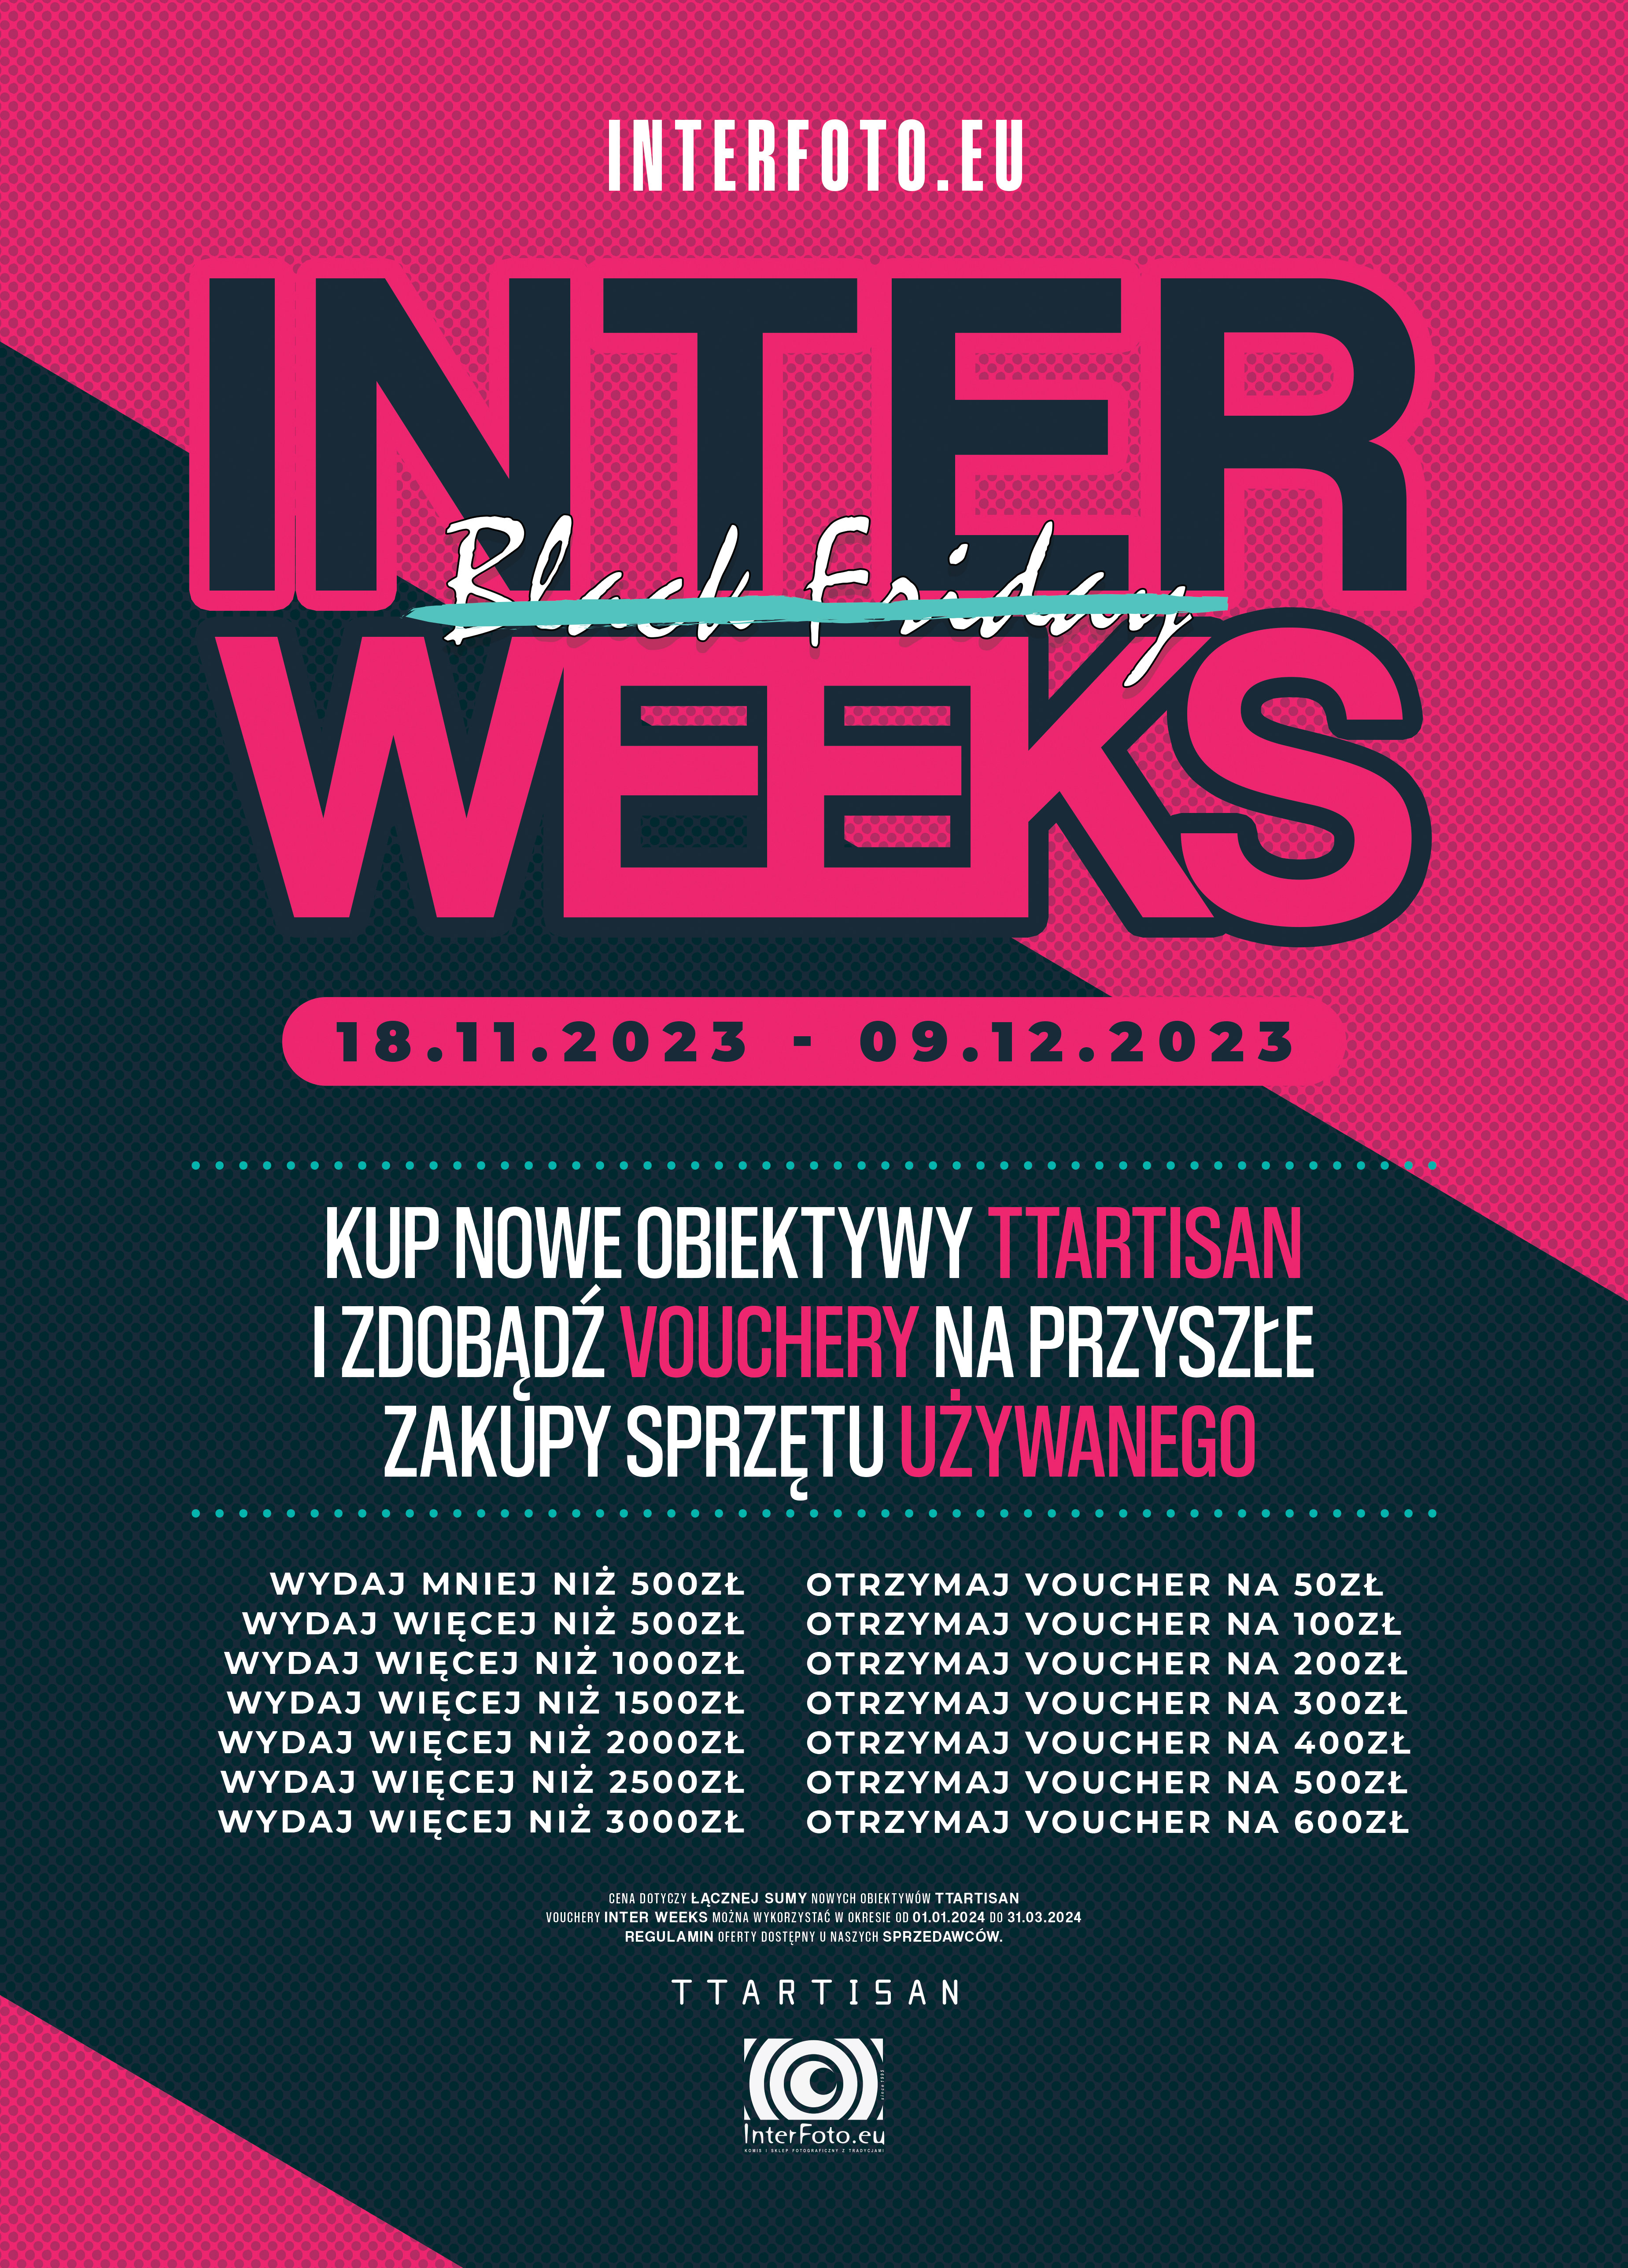 Inter Weeks